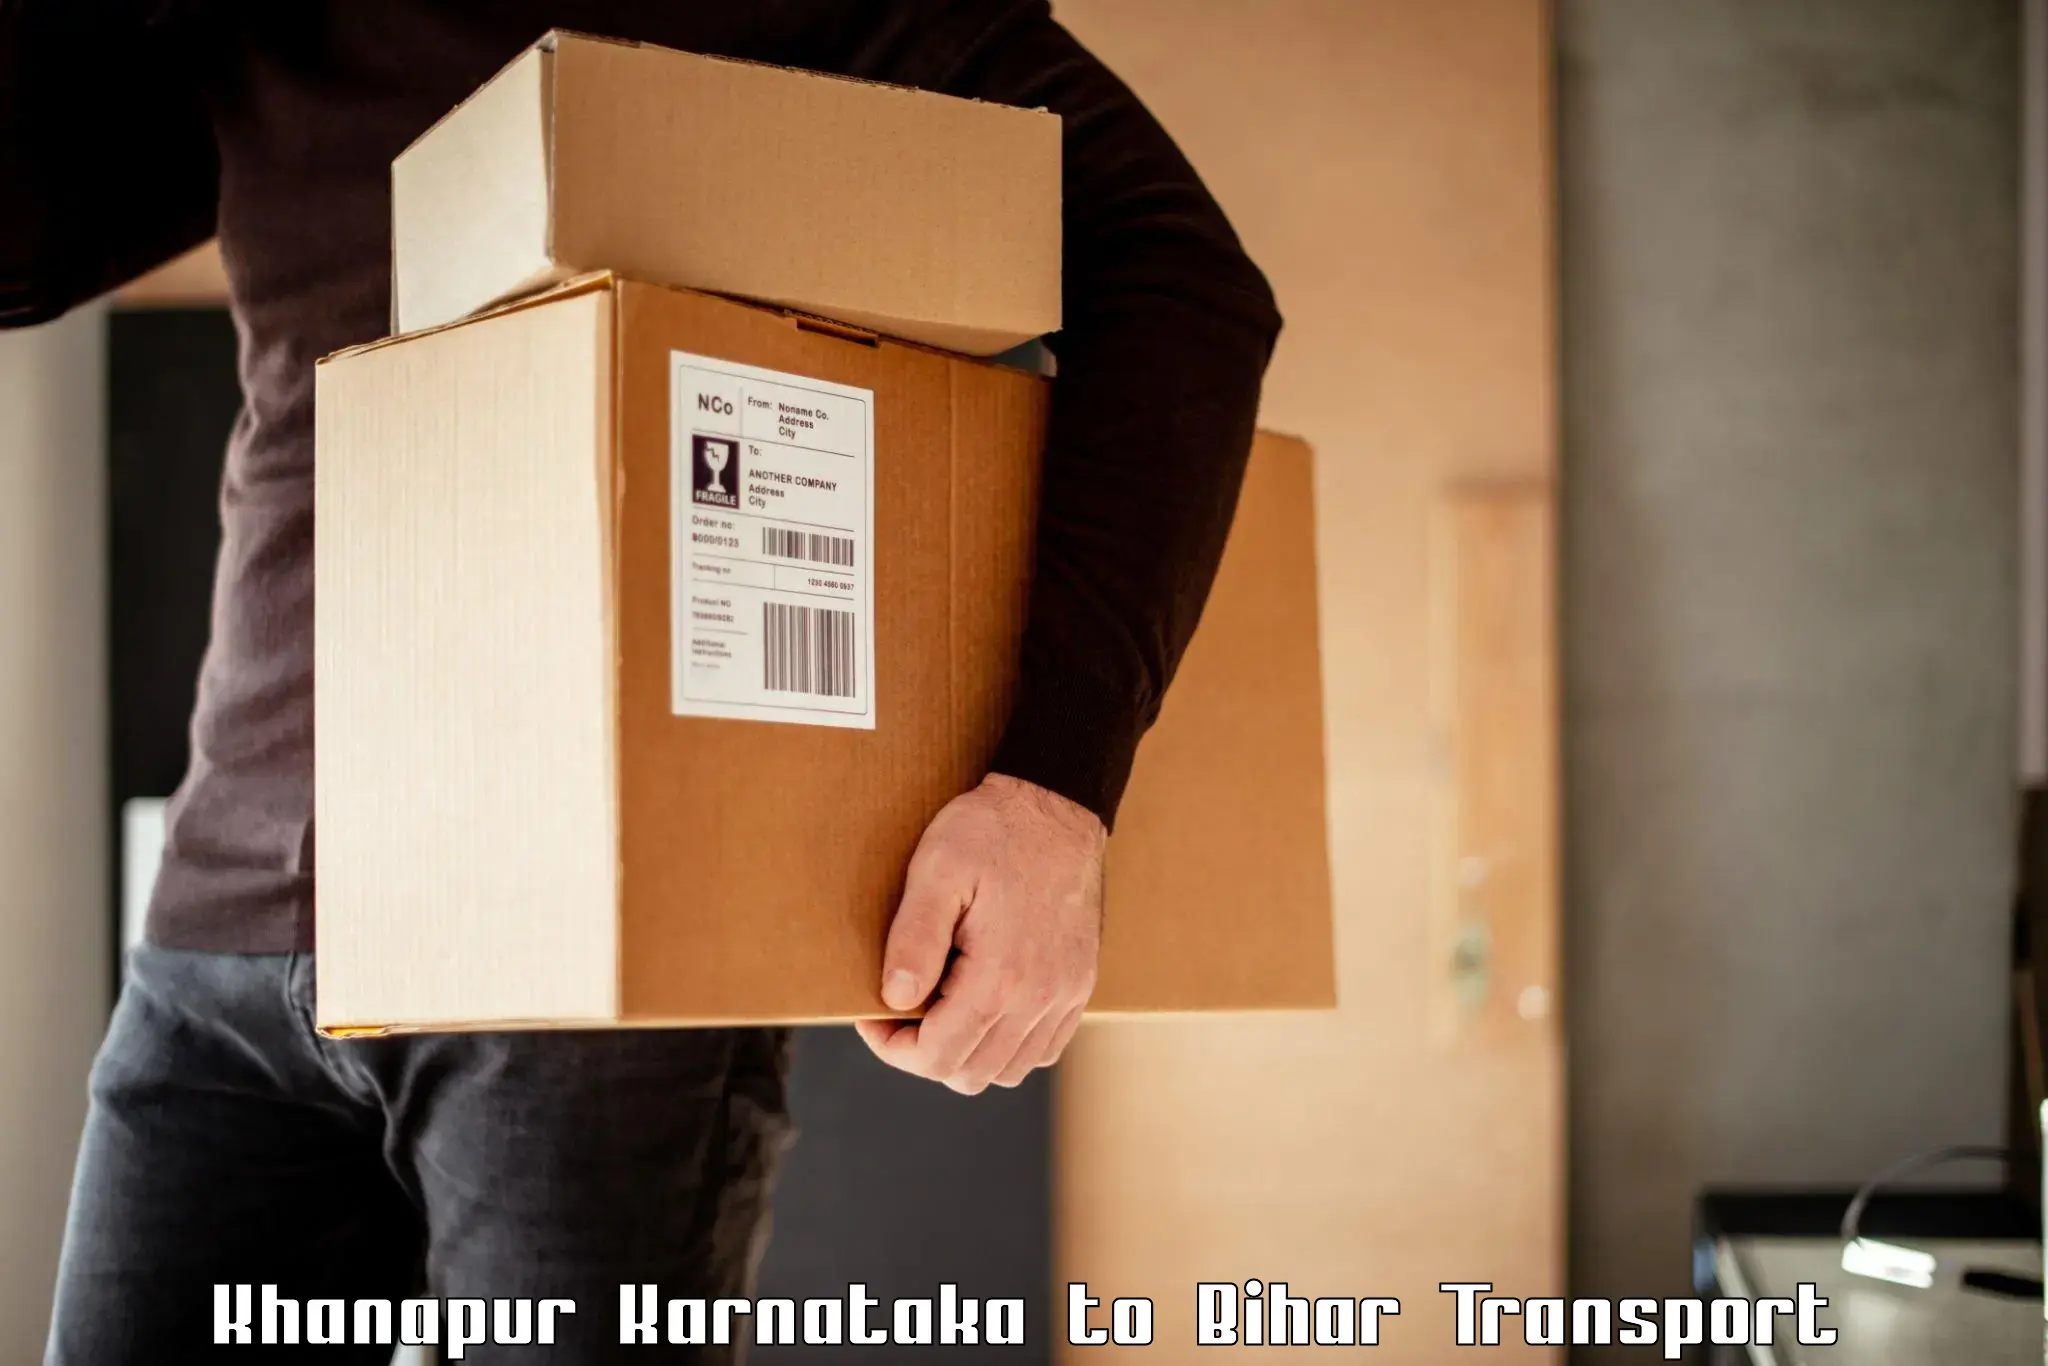 Online transport Khanapur Karnataka to Barauni